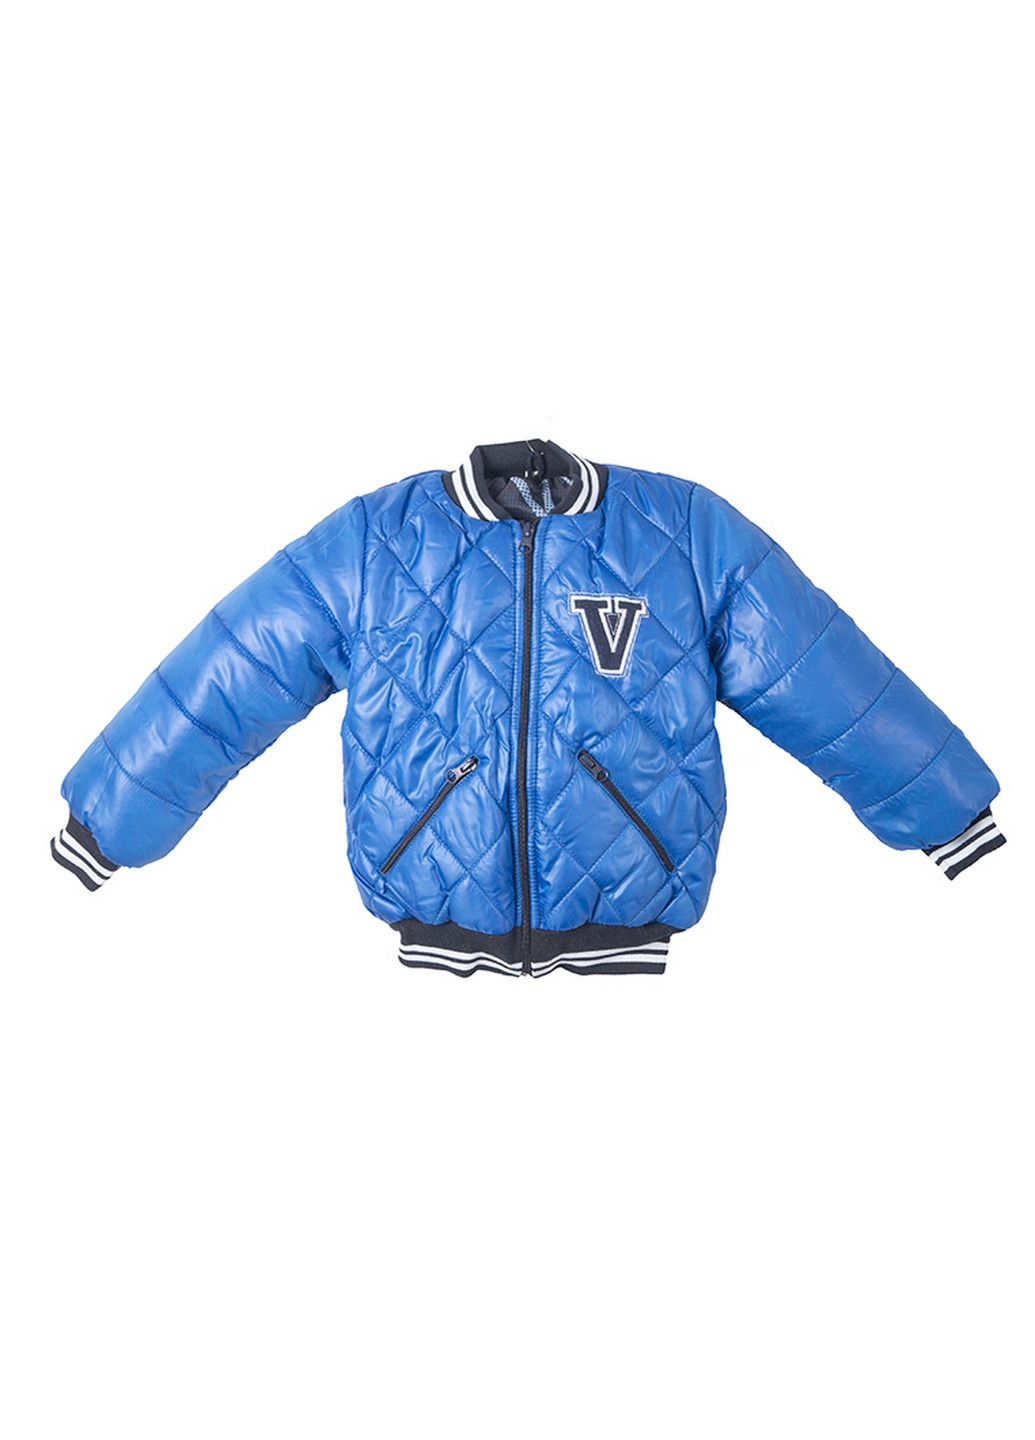 Синяя демисезонная куртка демисезонная для мальчика Vestes